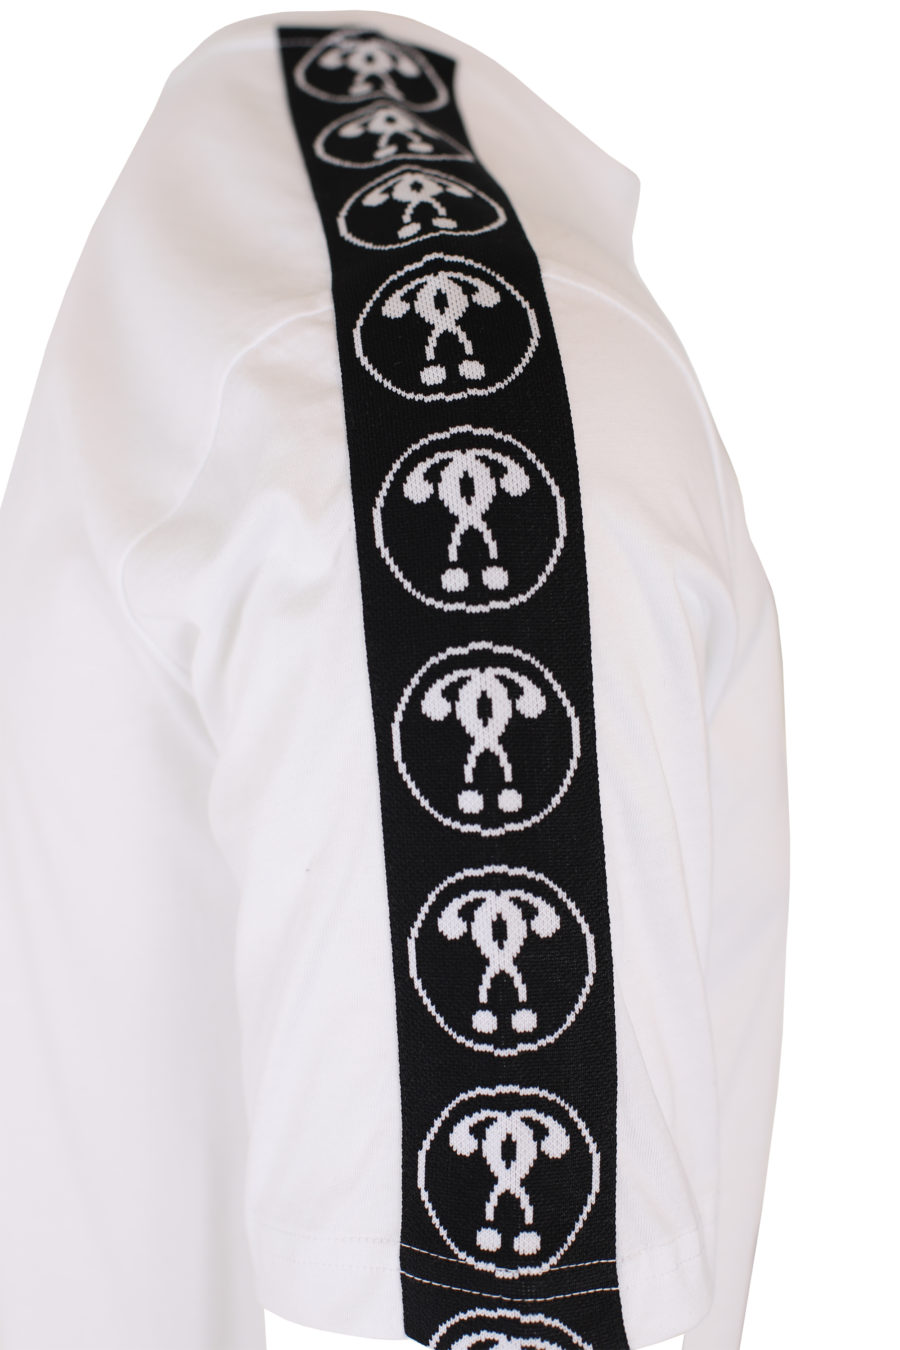 T-shirt blanc avec petit logo à double question et ruban adhésif sur les manches - IMG 9331